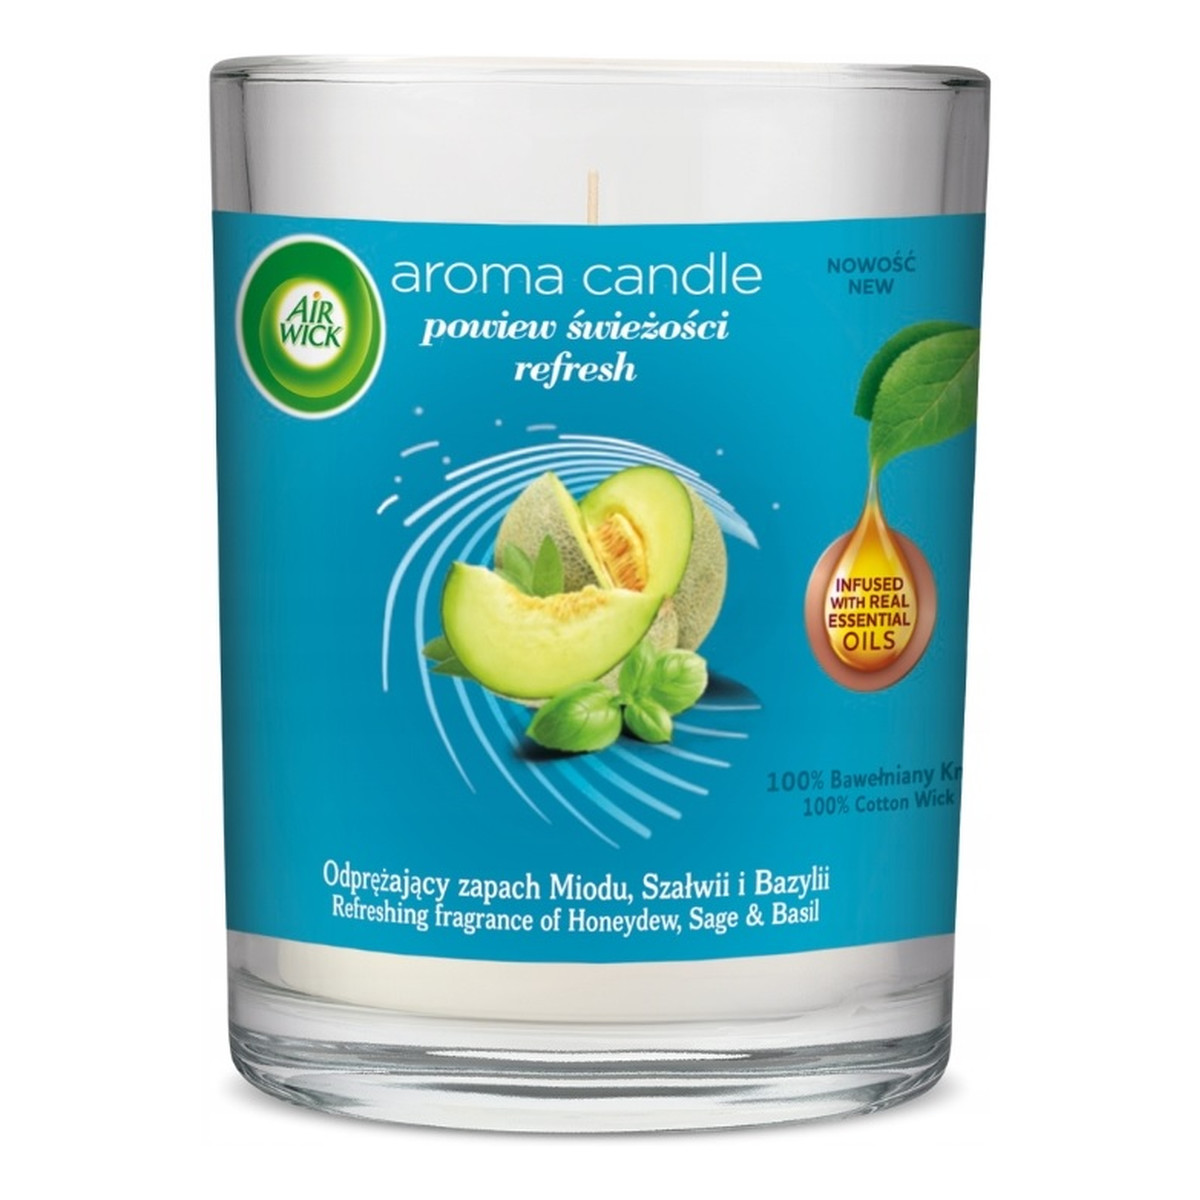 Air Wick Aroma Candle refresh świeca zapachowa powiew świeżości 220g